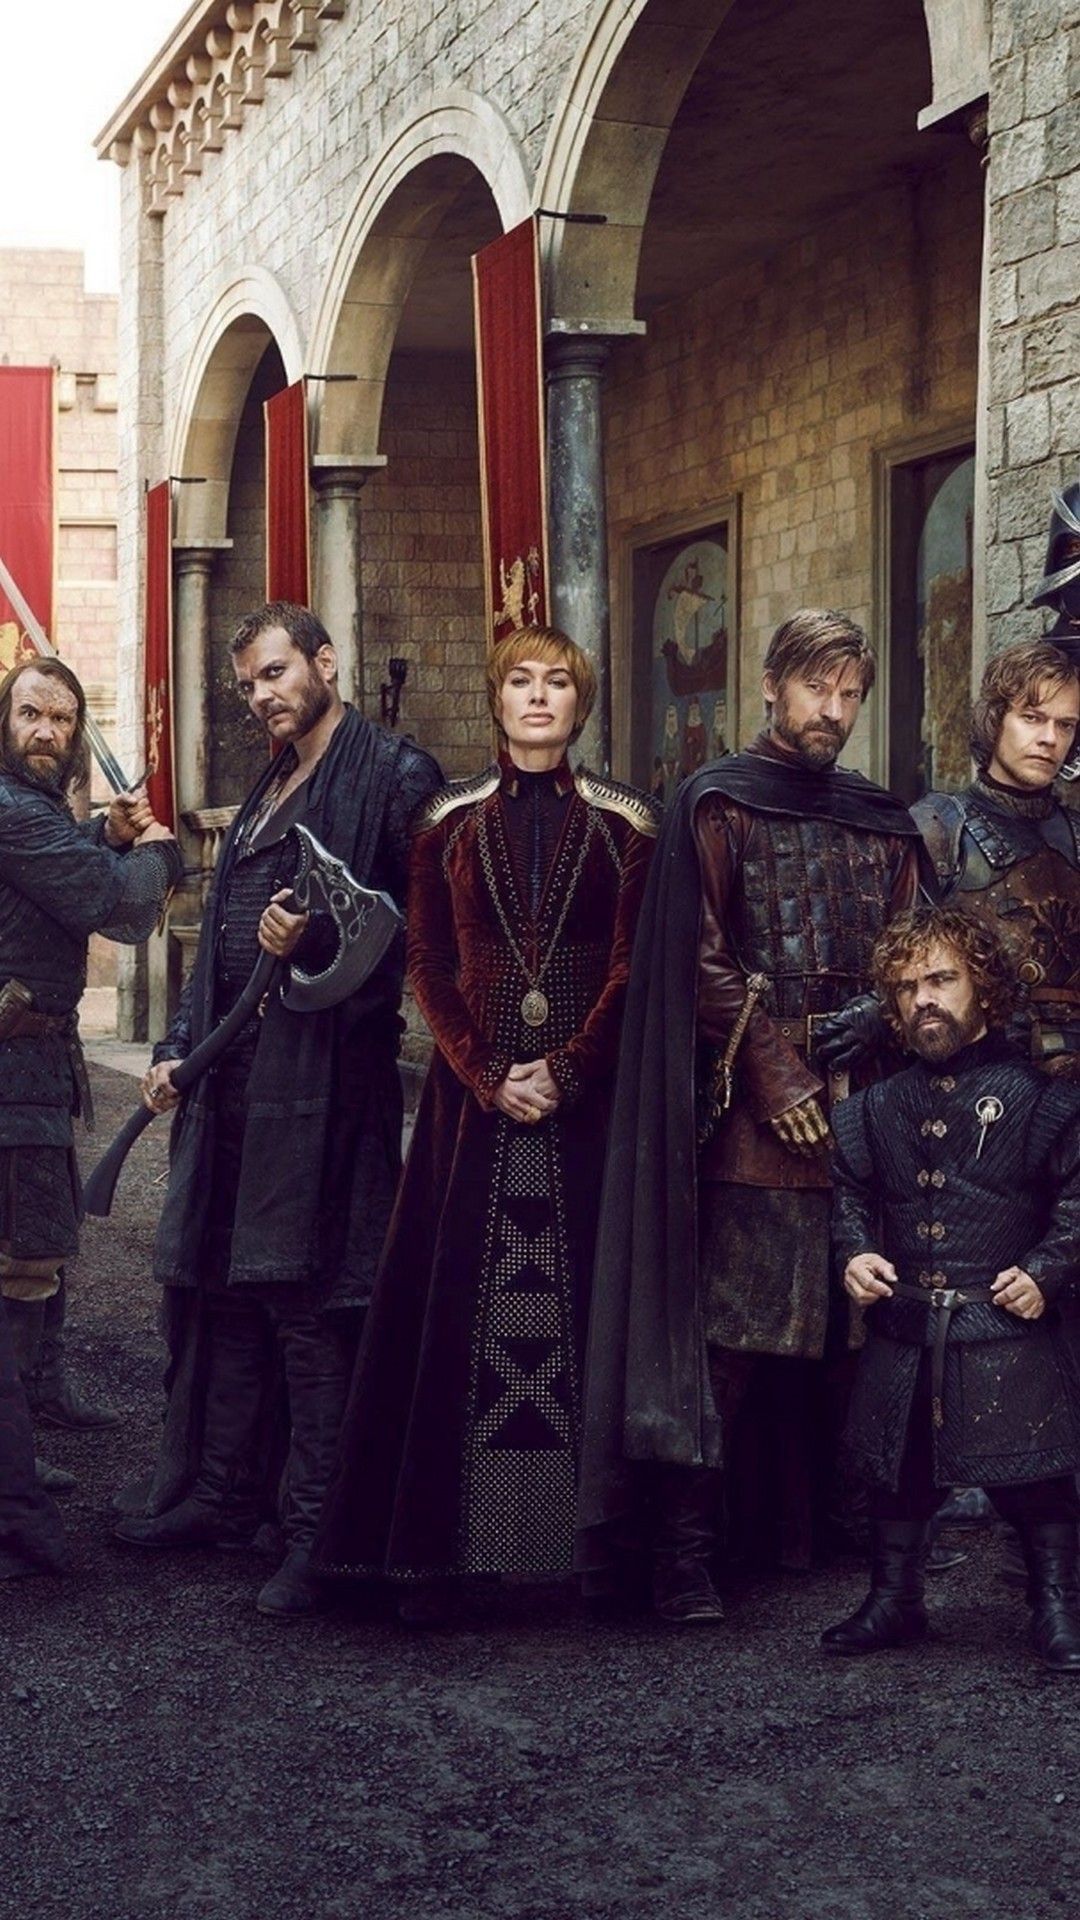 Game of Thrones Season 8 Phone 8 Wallpaper - Best Phone Wallpaper HD |  Jaime lannister, Lannister, Jaime and brienne